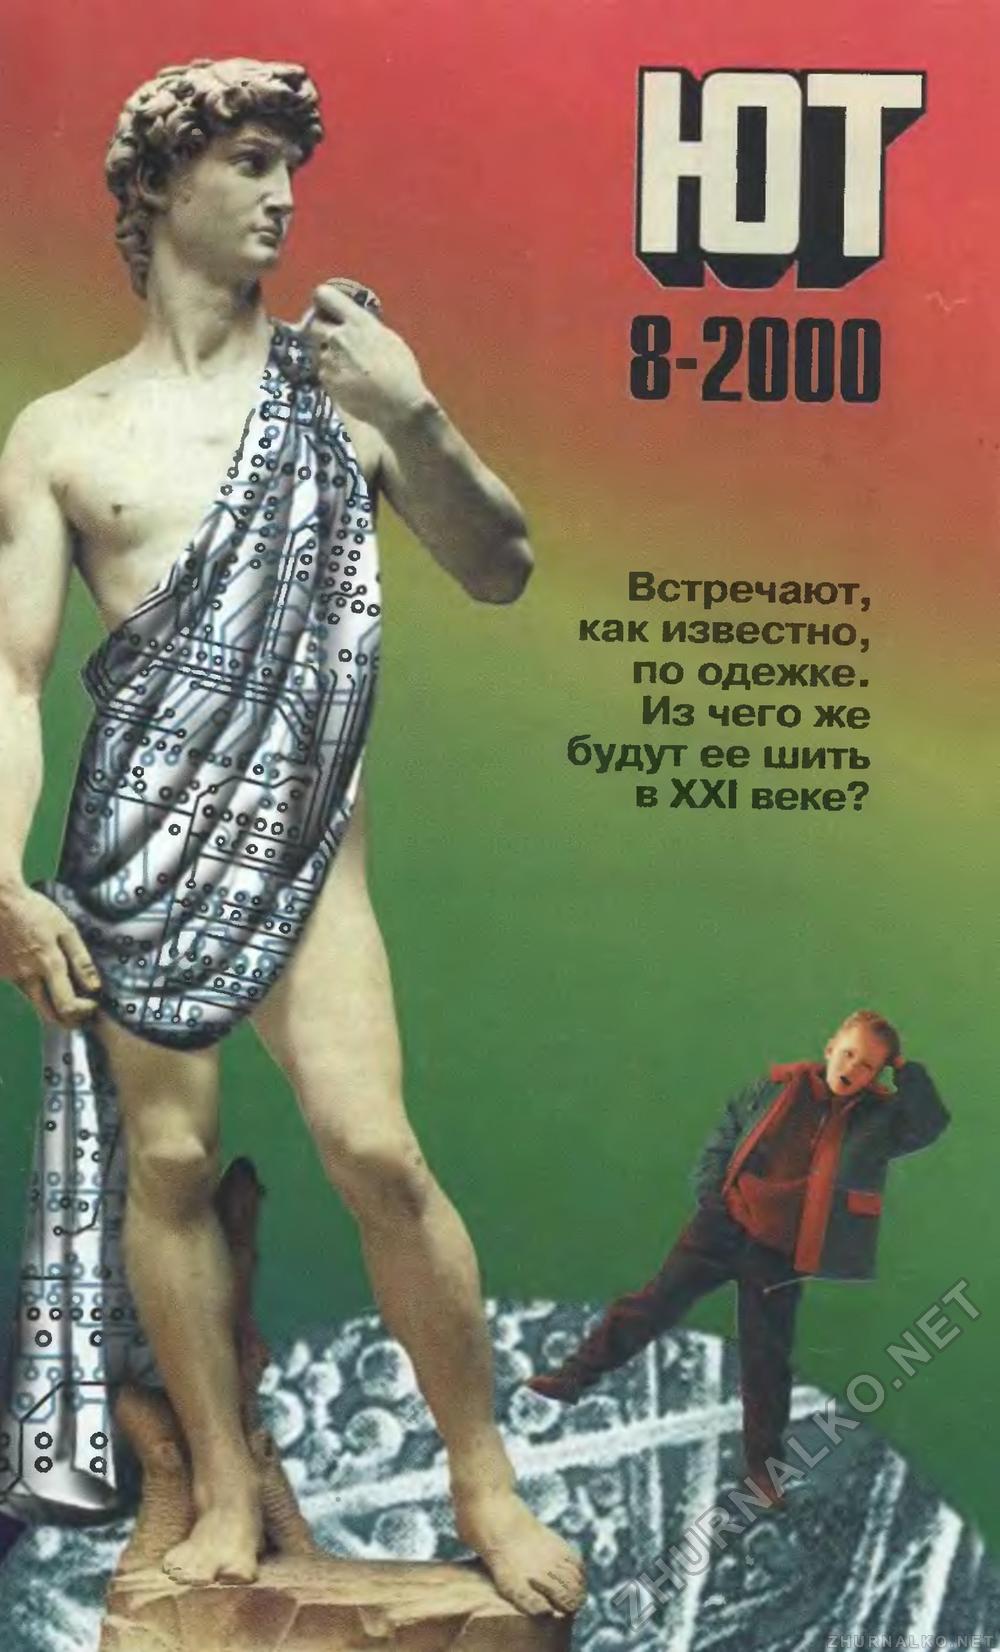   2000-08,  1